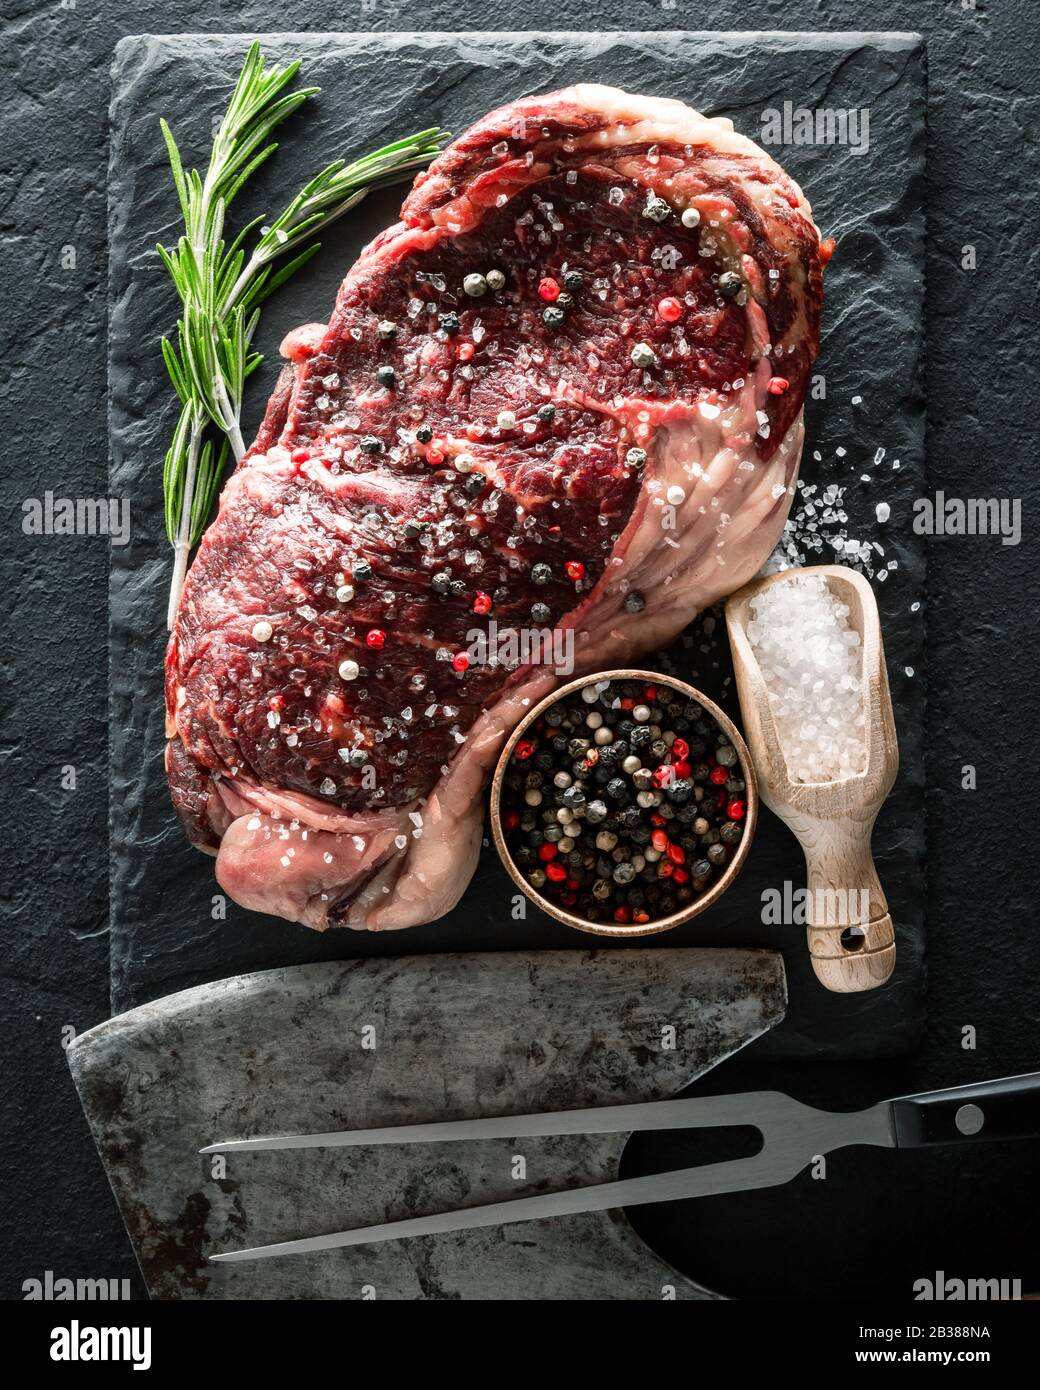 Le persillage Ribeye Steak sur plaque noire. Hacher la viande de boeuf Banque D'Images